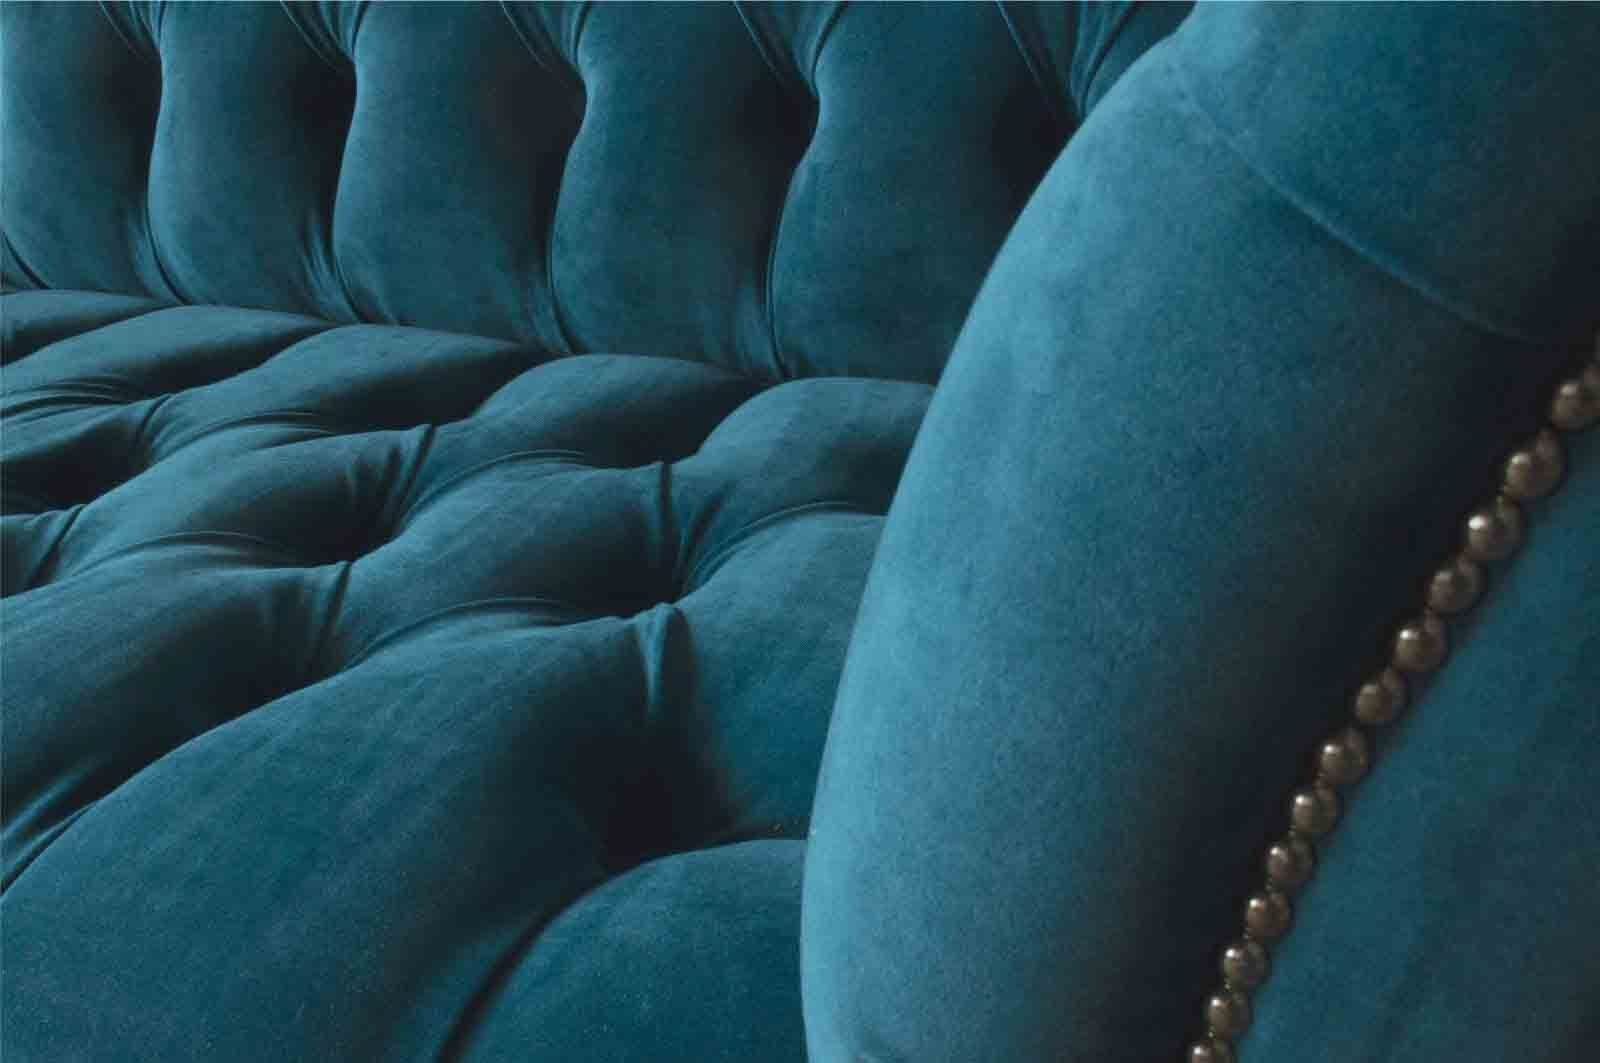 JVmoebel Sofa Sofa Textil Dreisitzer Design In Polster Made Möbel Neu, 3 Sofas Sitzer Europe Luxus